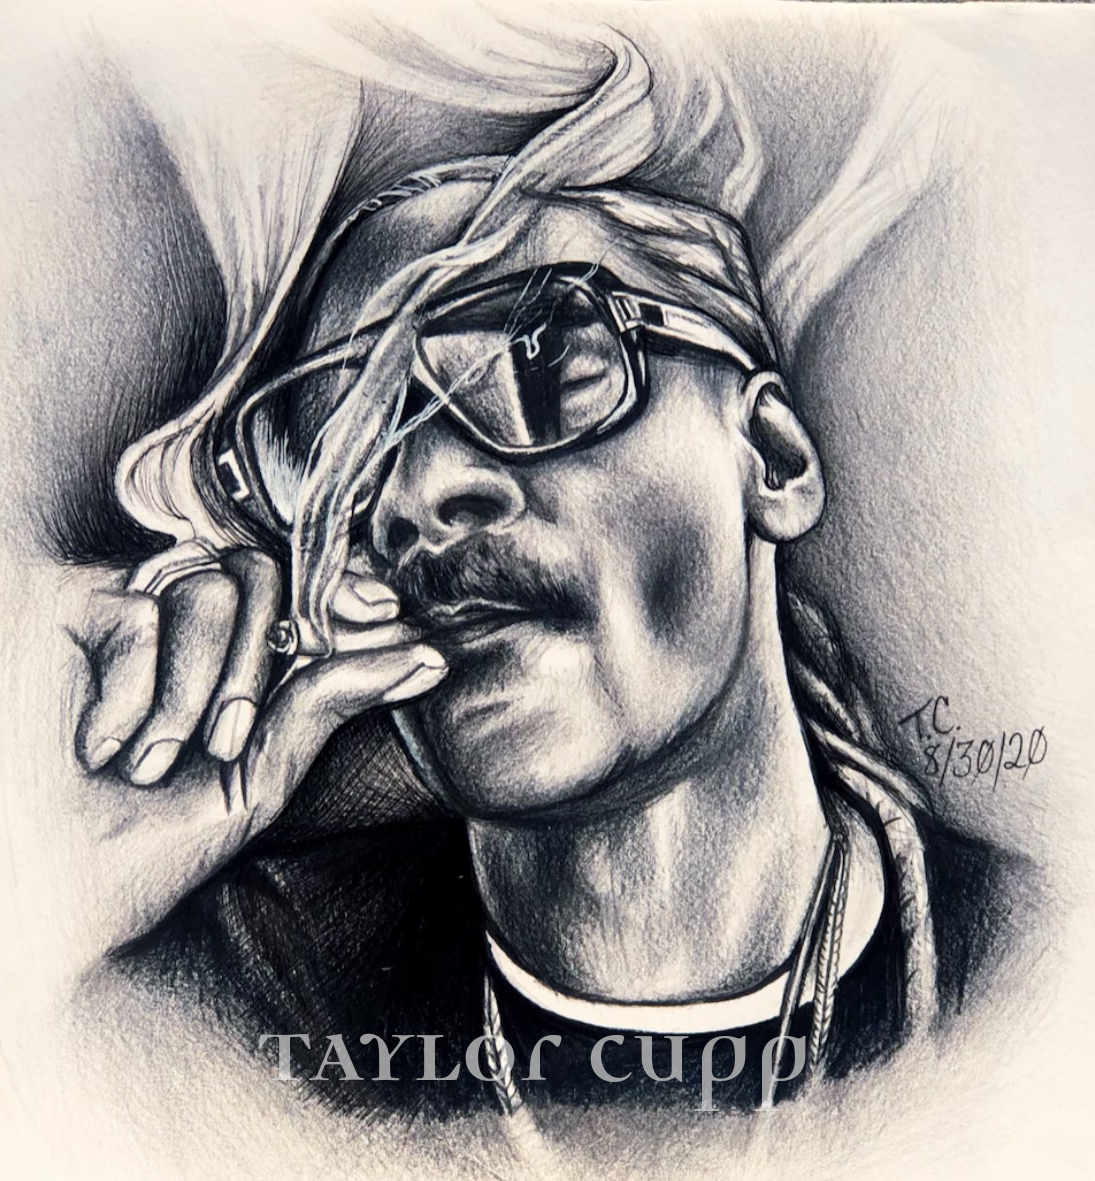 Taylor Cupp